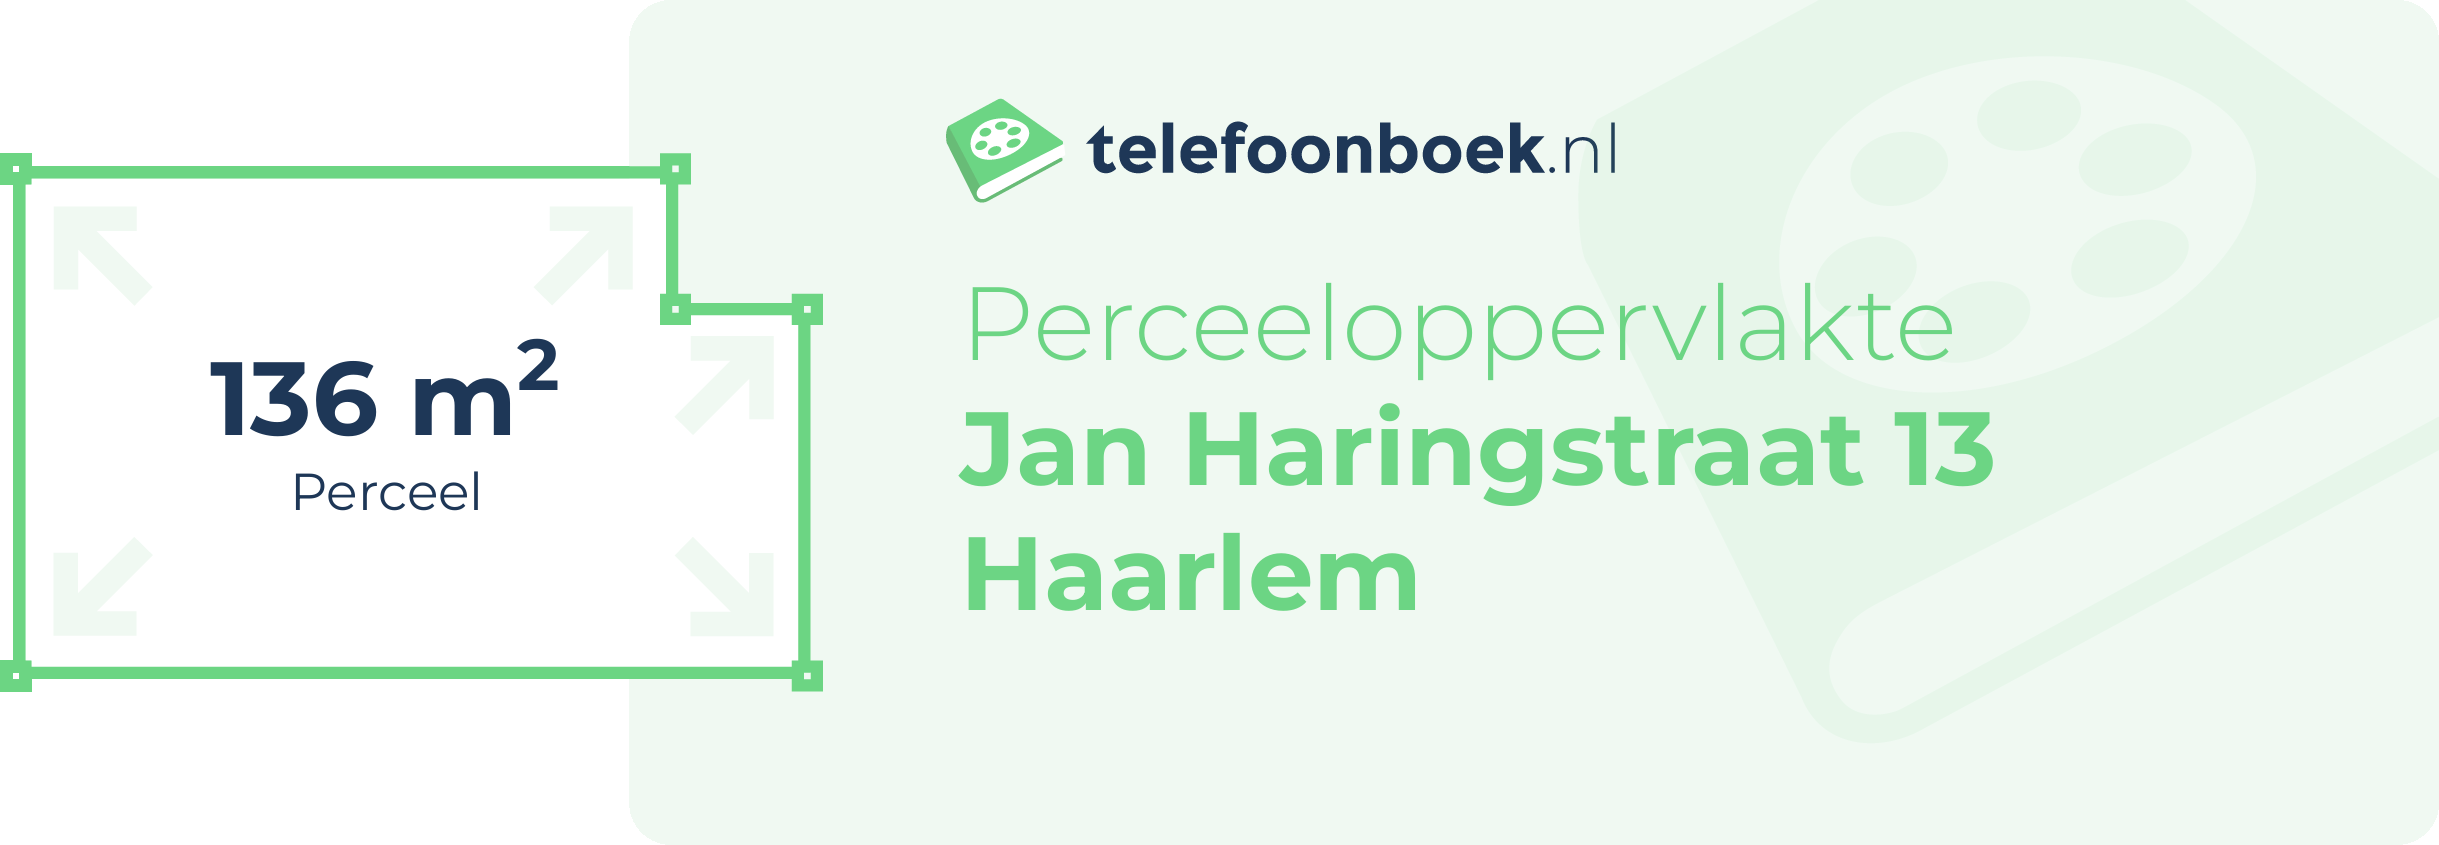 Perceeloppervlakte Jan Haringstraat 13 Haarlem